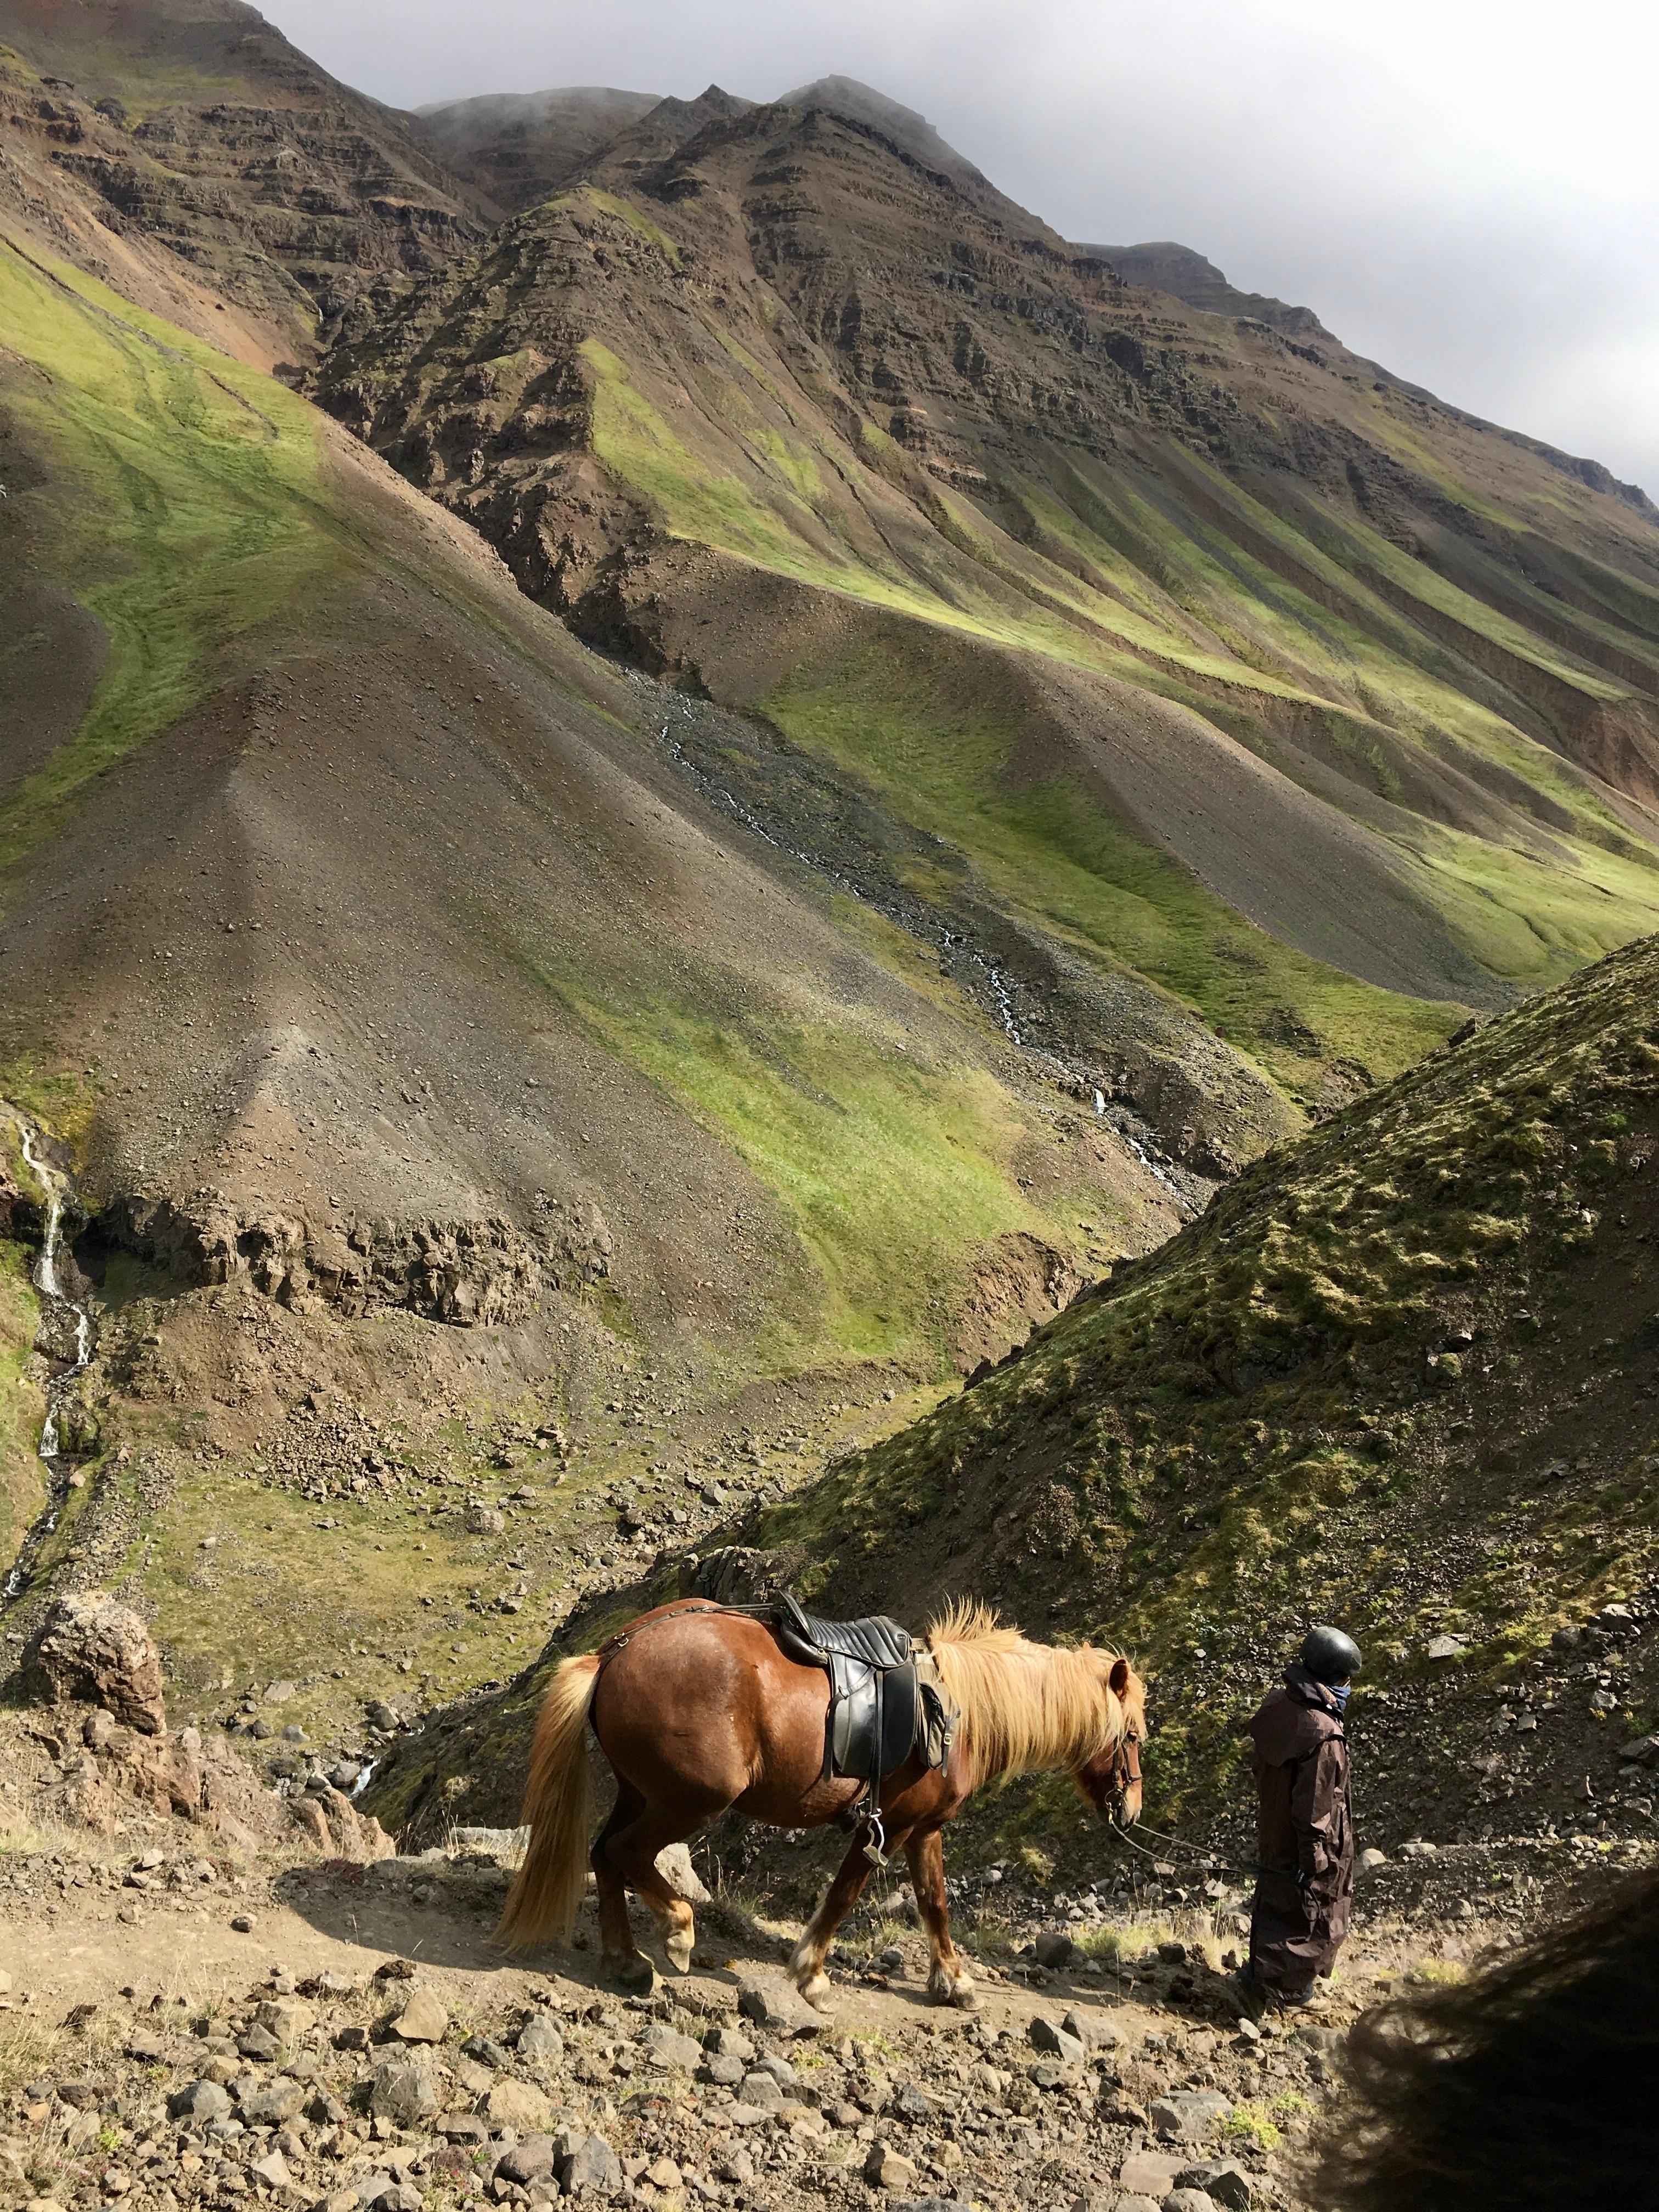 auf dem pferde 🐎 rücken durch Island 🇮🇸 😍
#travelchallange #meinschönsterurlaub